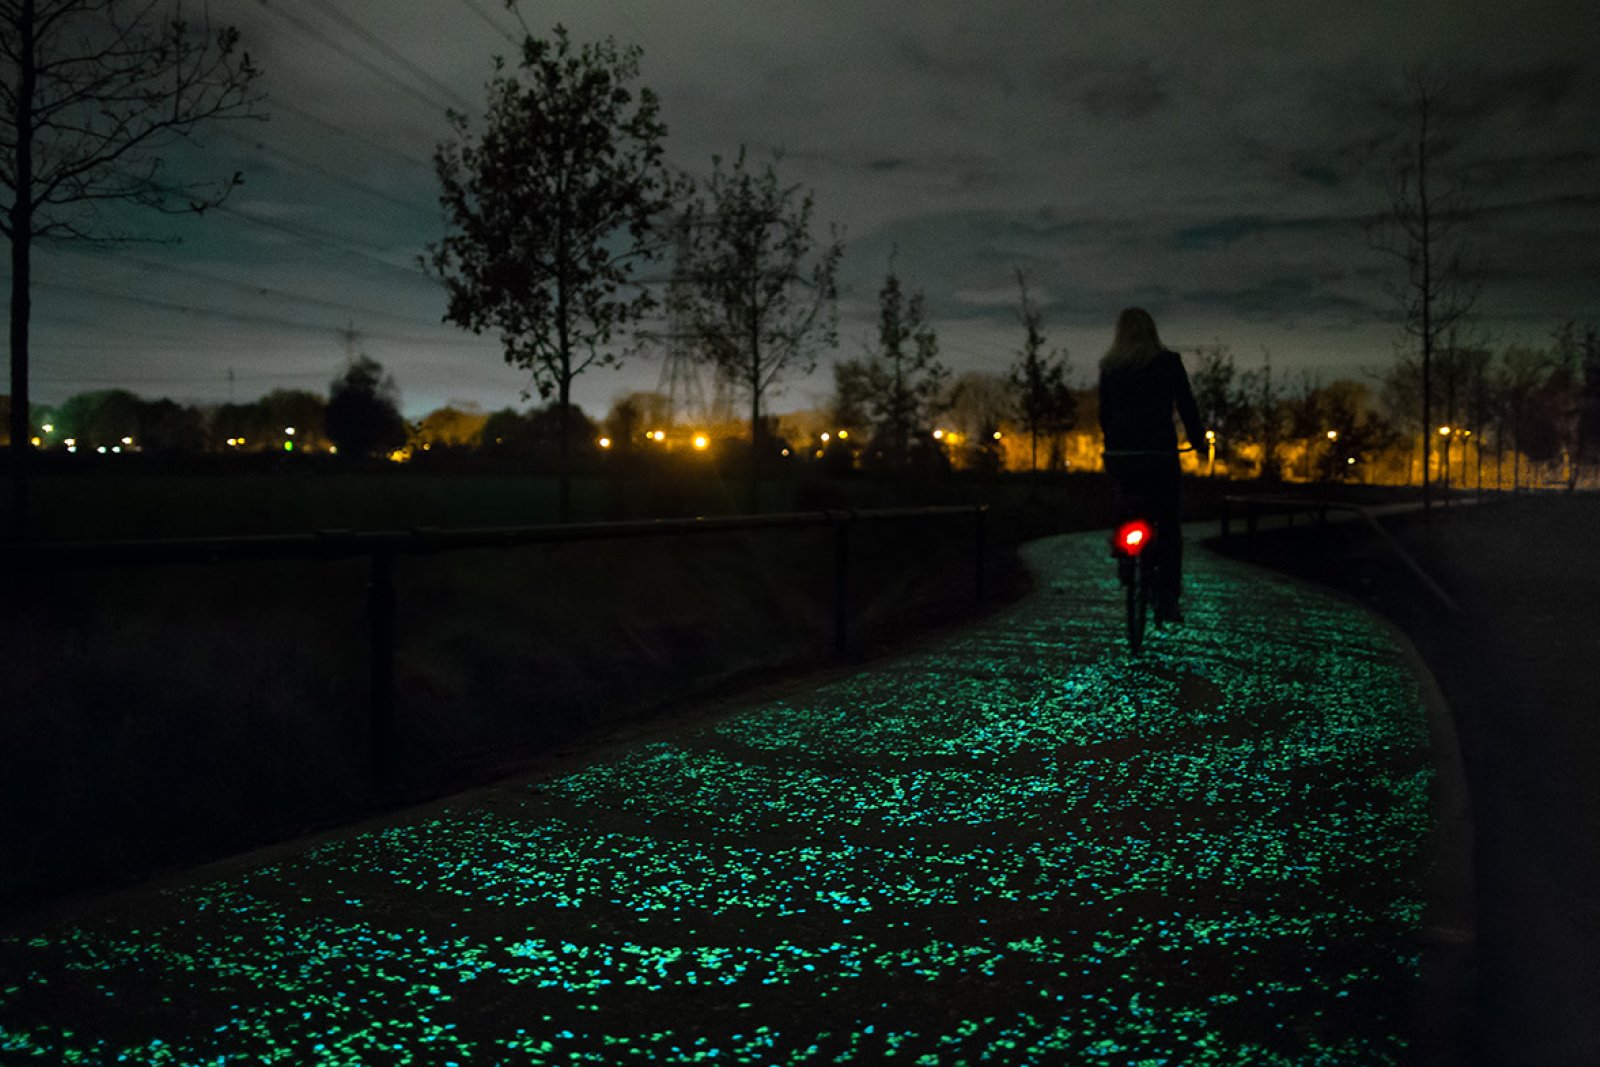 Van Gogh-Roosegaarde bike path a la Starry Night between Eindhoven and Nuenen